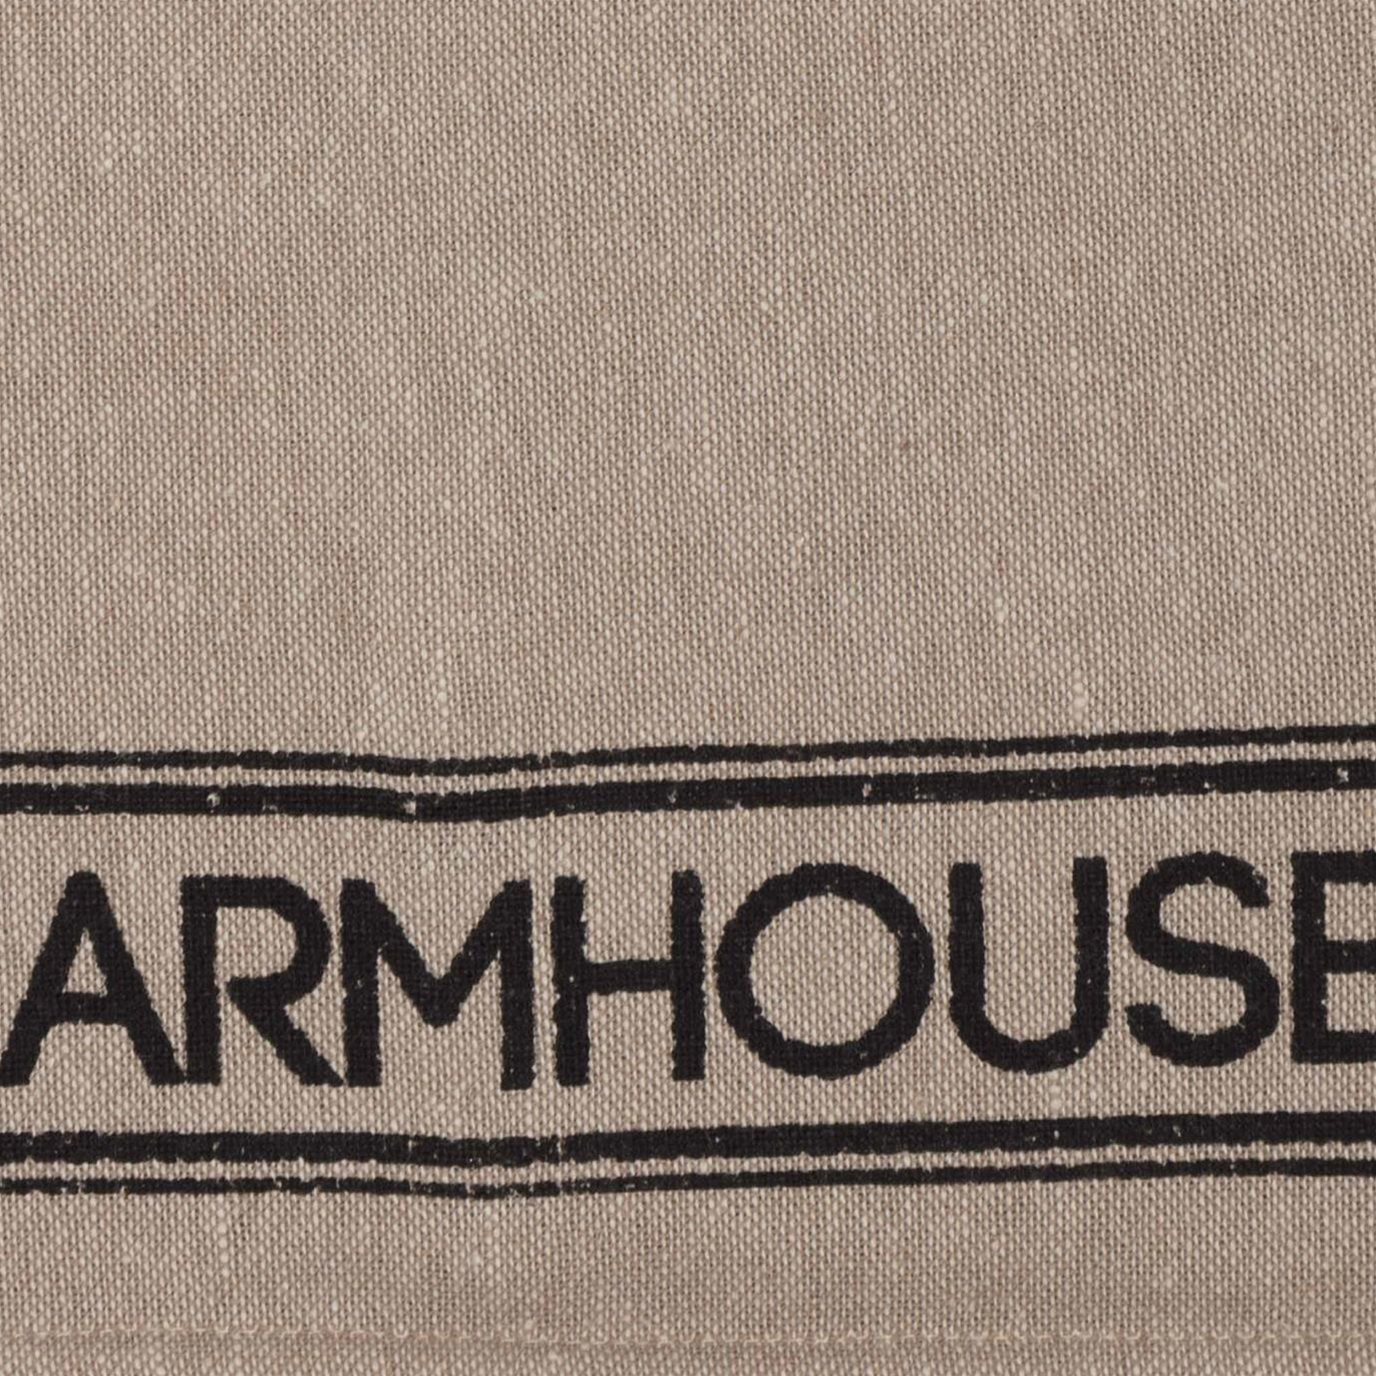 Farmhouse Kitchen Tea Towel Set of 2 Sawyer Mill Charcoal Button